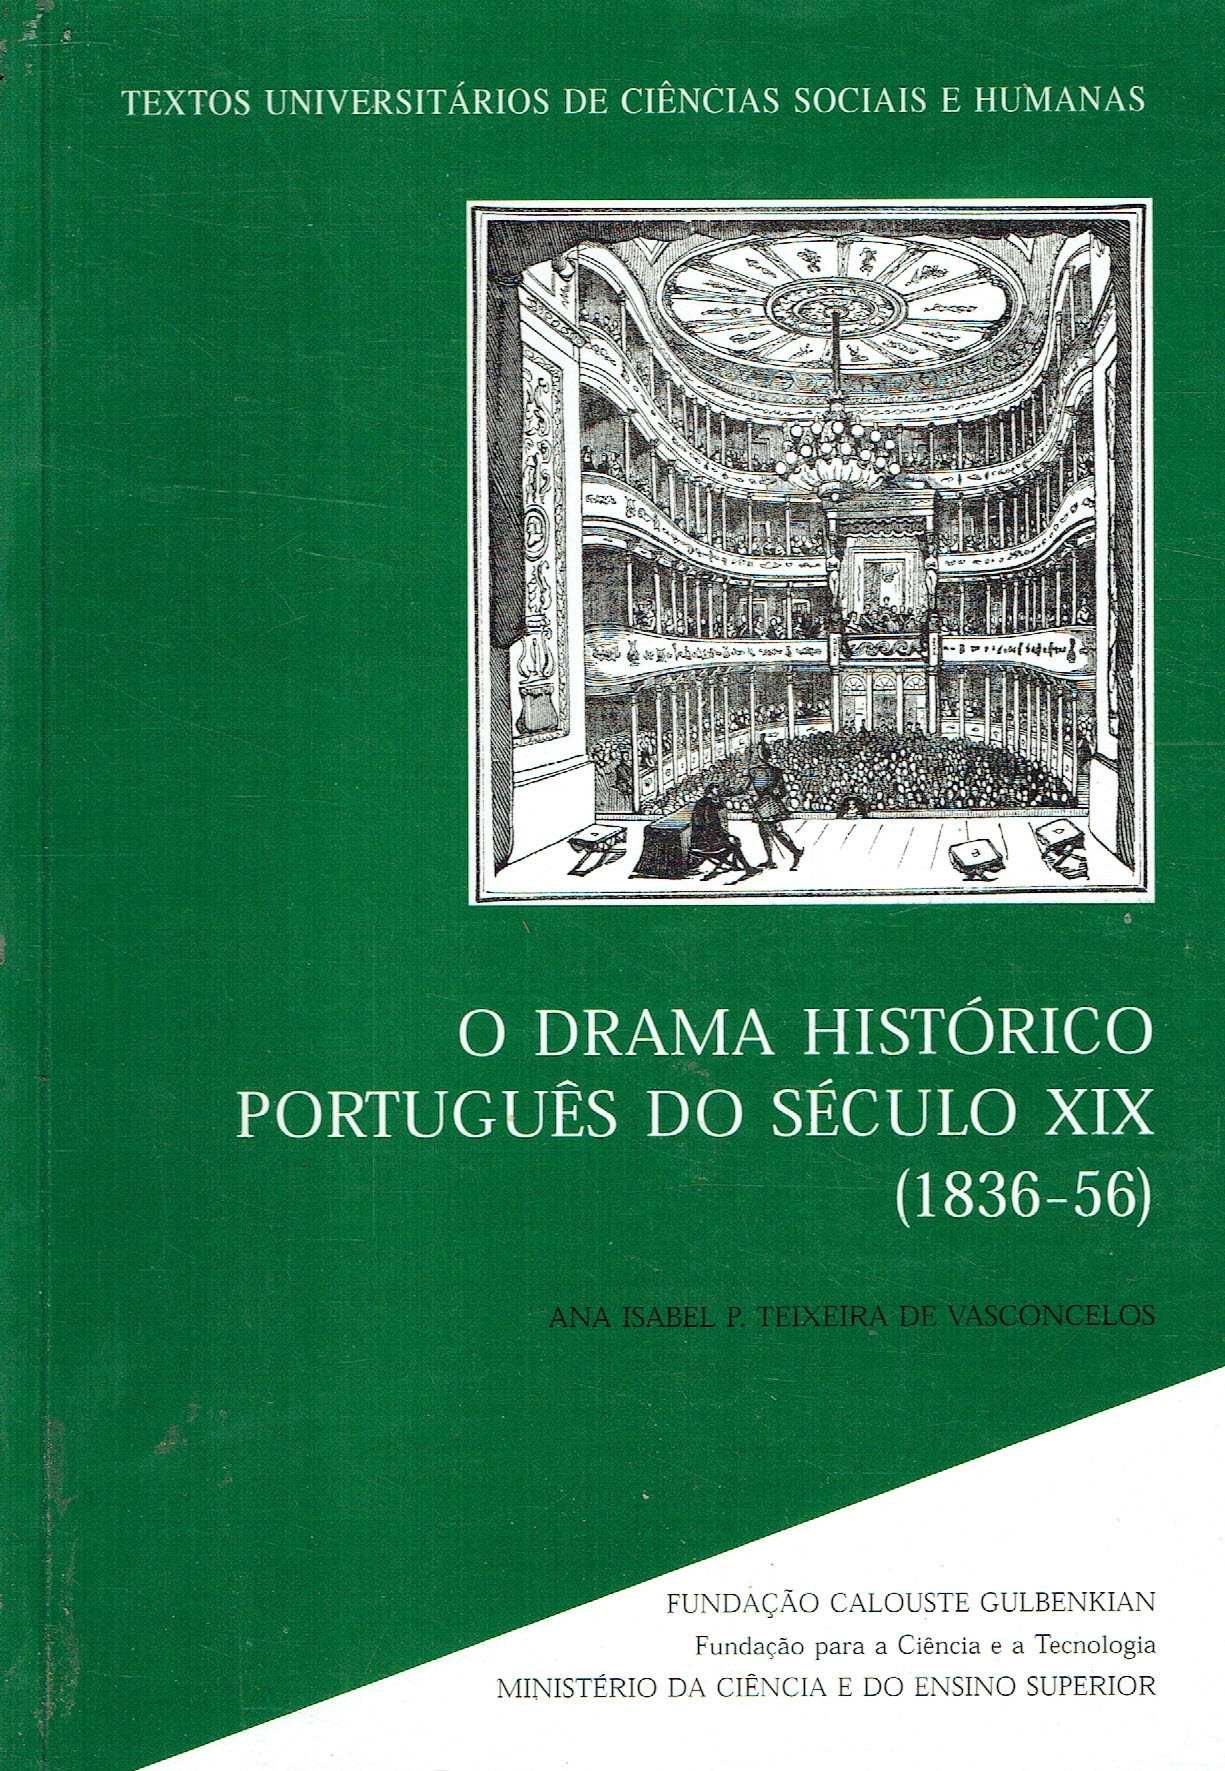 15053

O drama histórico português do século XIX